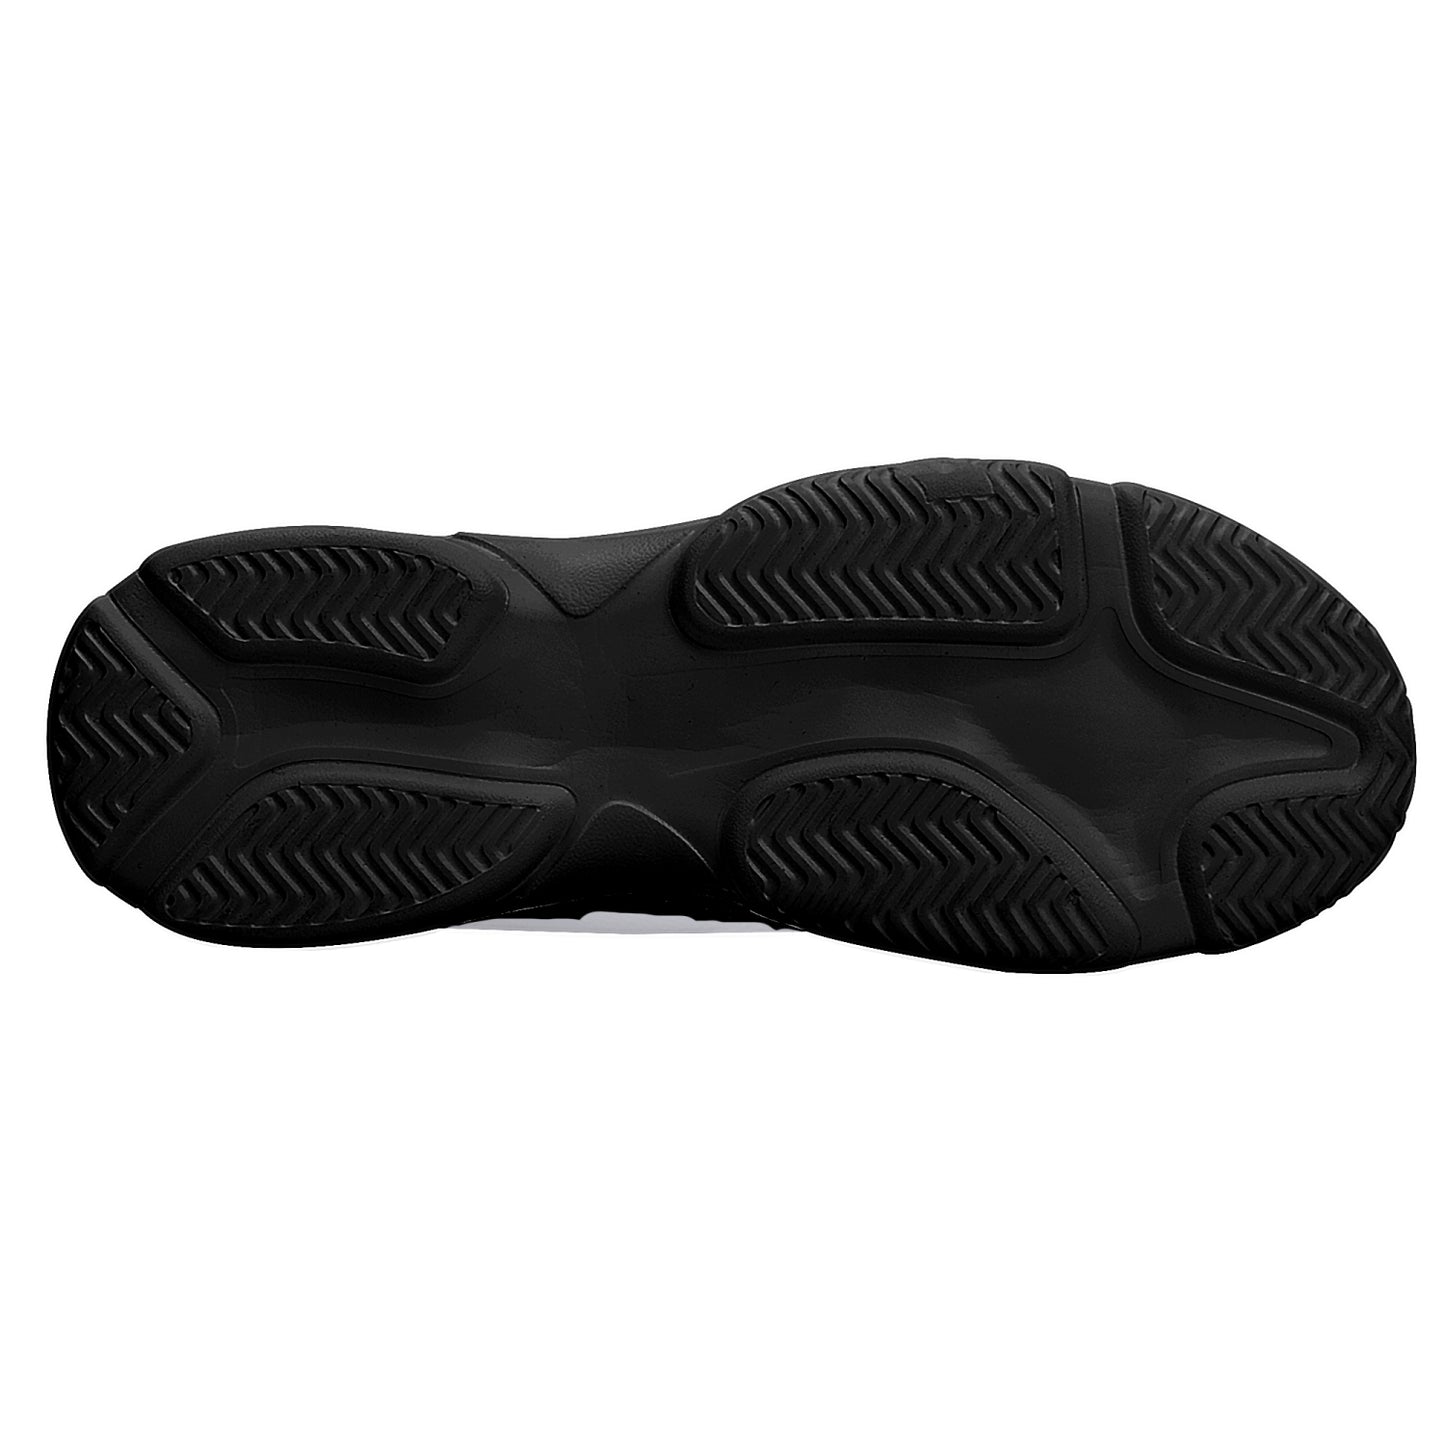 Zapatillas unisex "vayansilans" (blanco / negro)